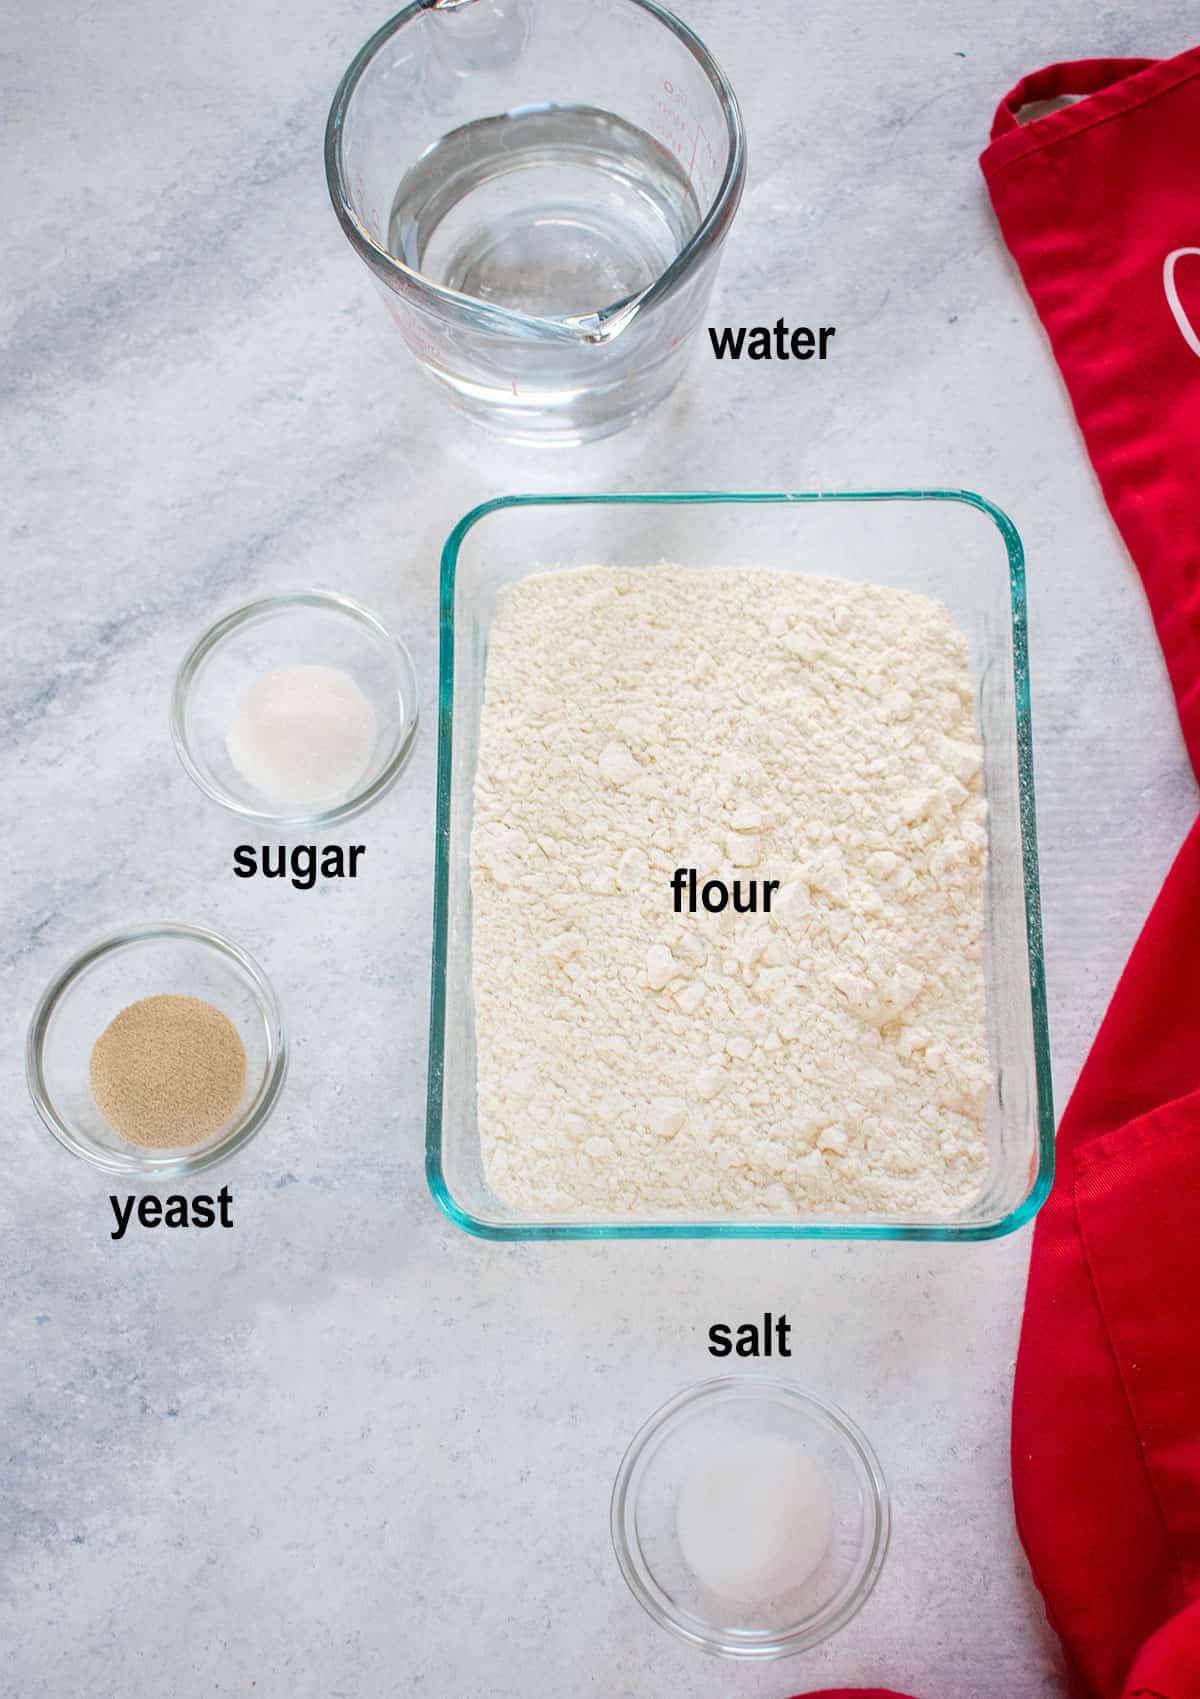 water, sugar, salt, yeast, flour